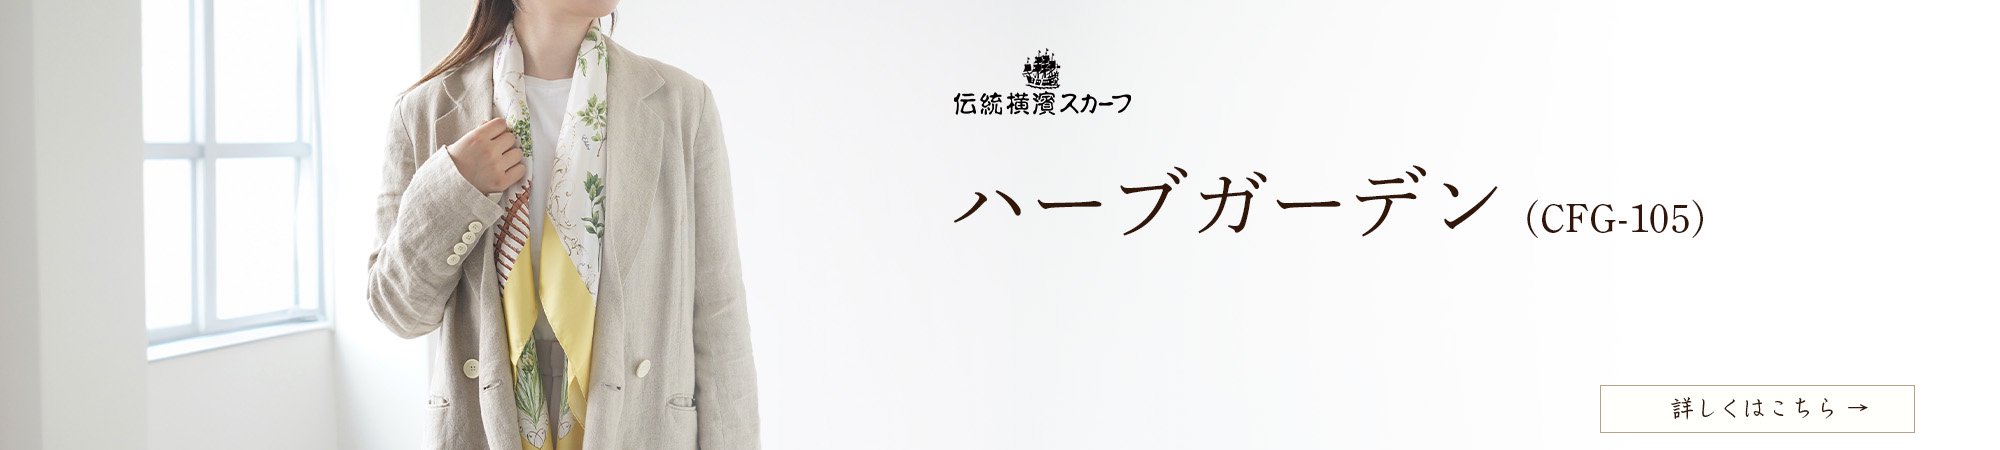 四季のツリー花(CFE-224) 伝統横濱スカーフ 大判 シルクツイル スカーフ